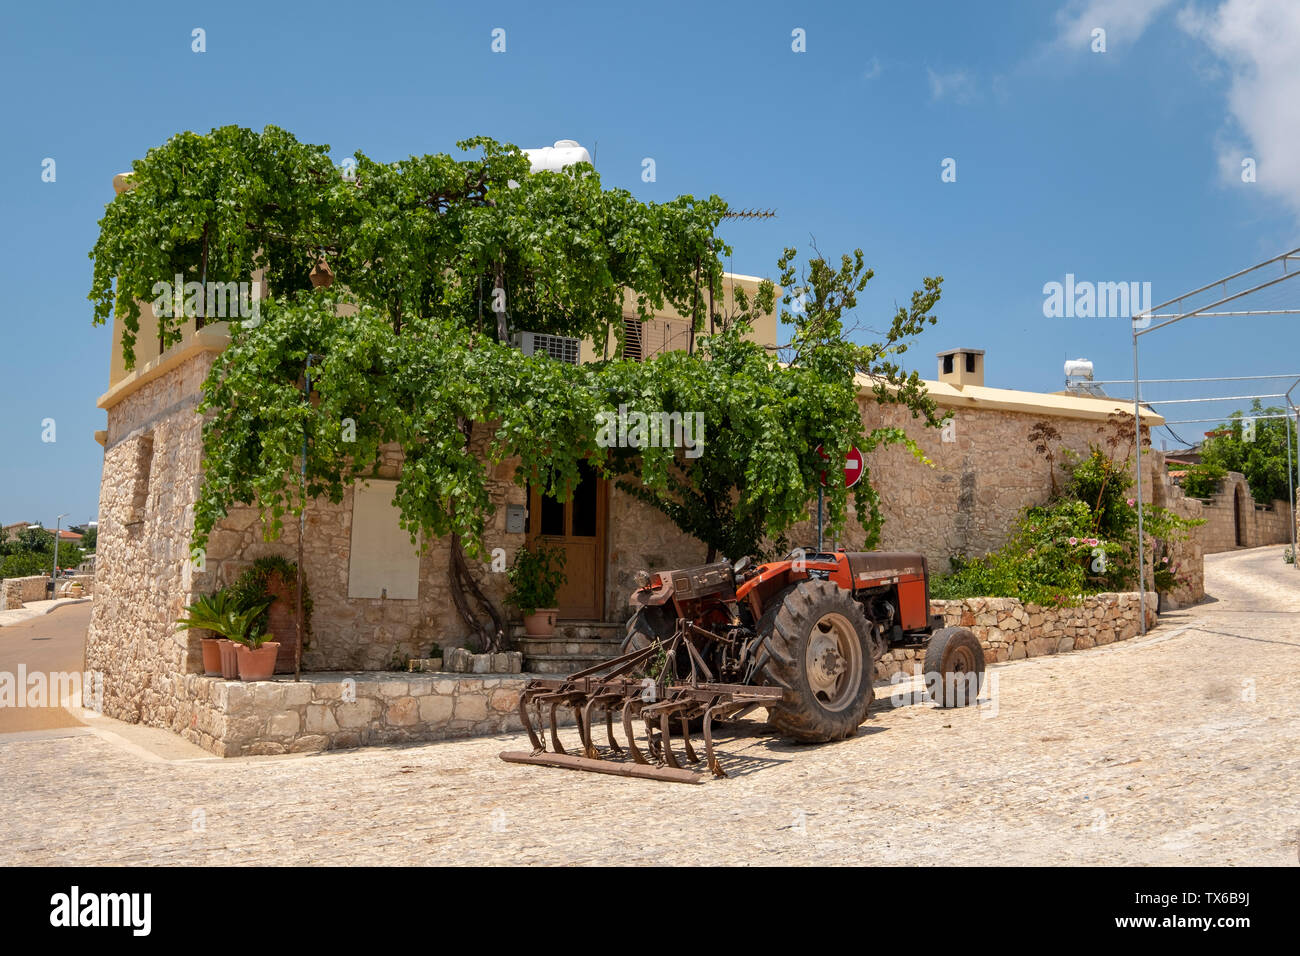 Un trattore parcheggiato al di fuori di una casa nel villaggio Ineia, regione di Paphos, Cipro. Foto Stock